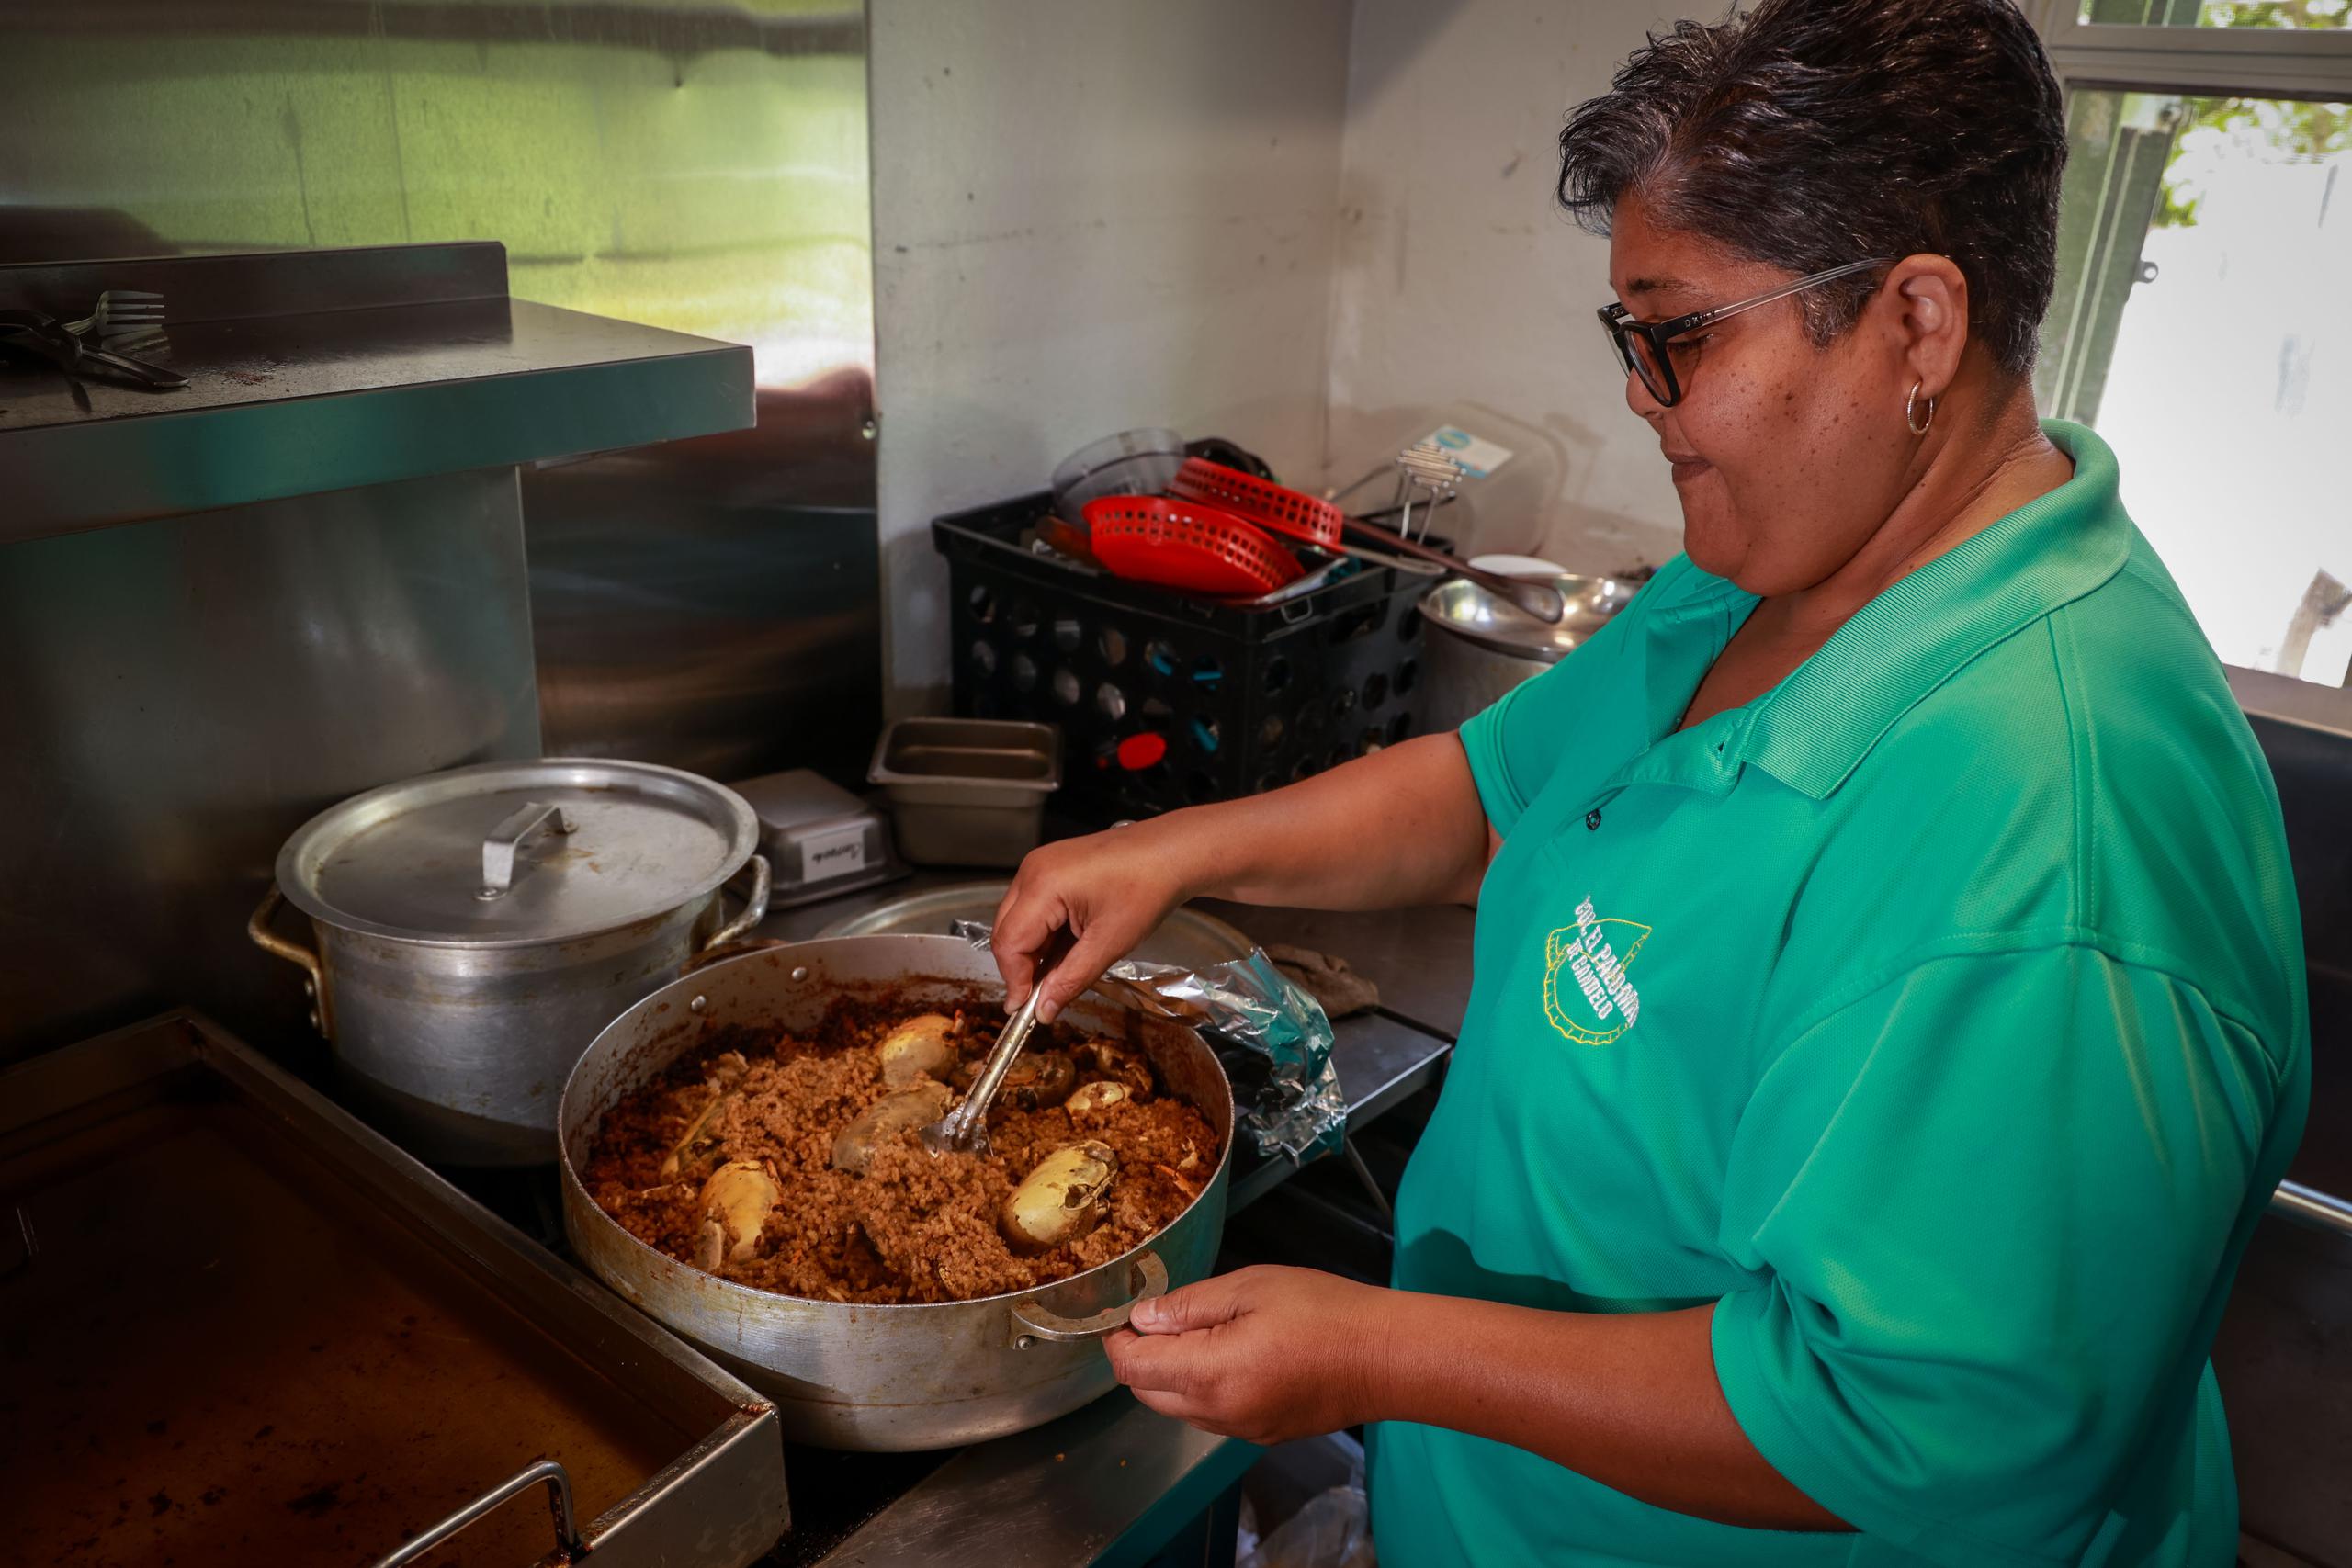 Idamaris Santiago Figueroa, copropietaria de Colmado Palomar, es la encargada de preparar la comida que allí se vende y que ha conquistado paladares.